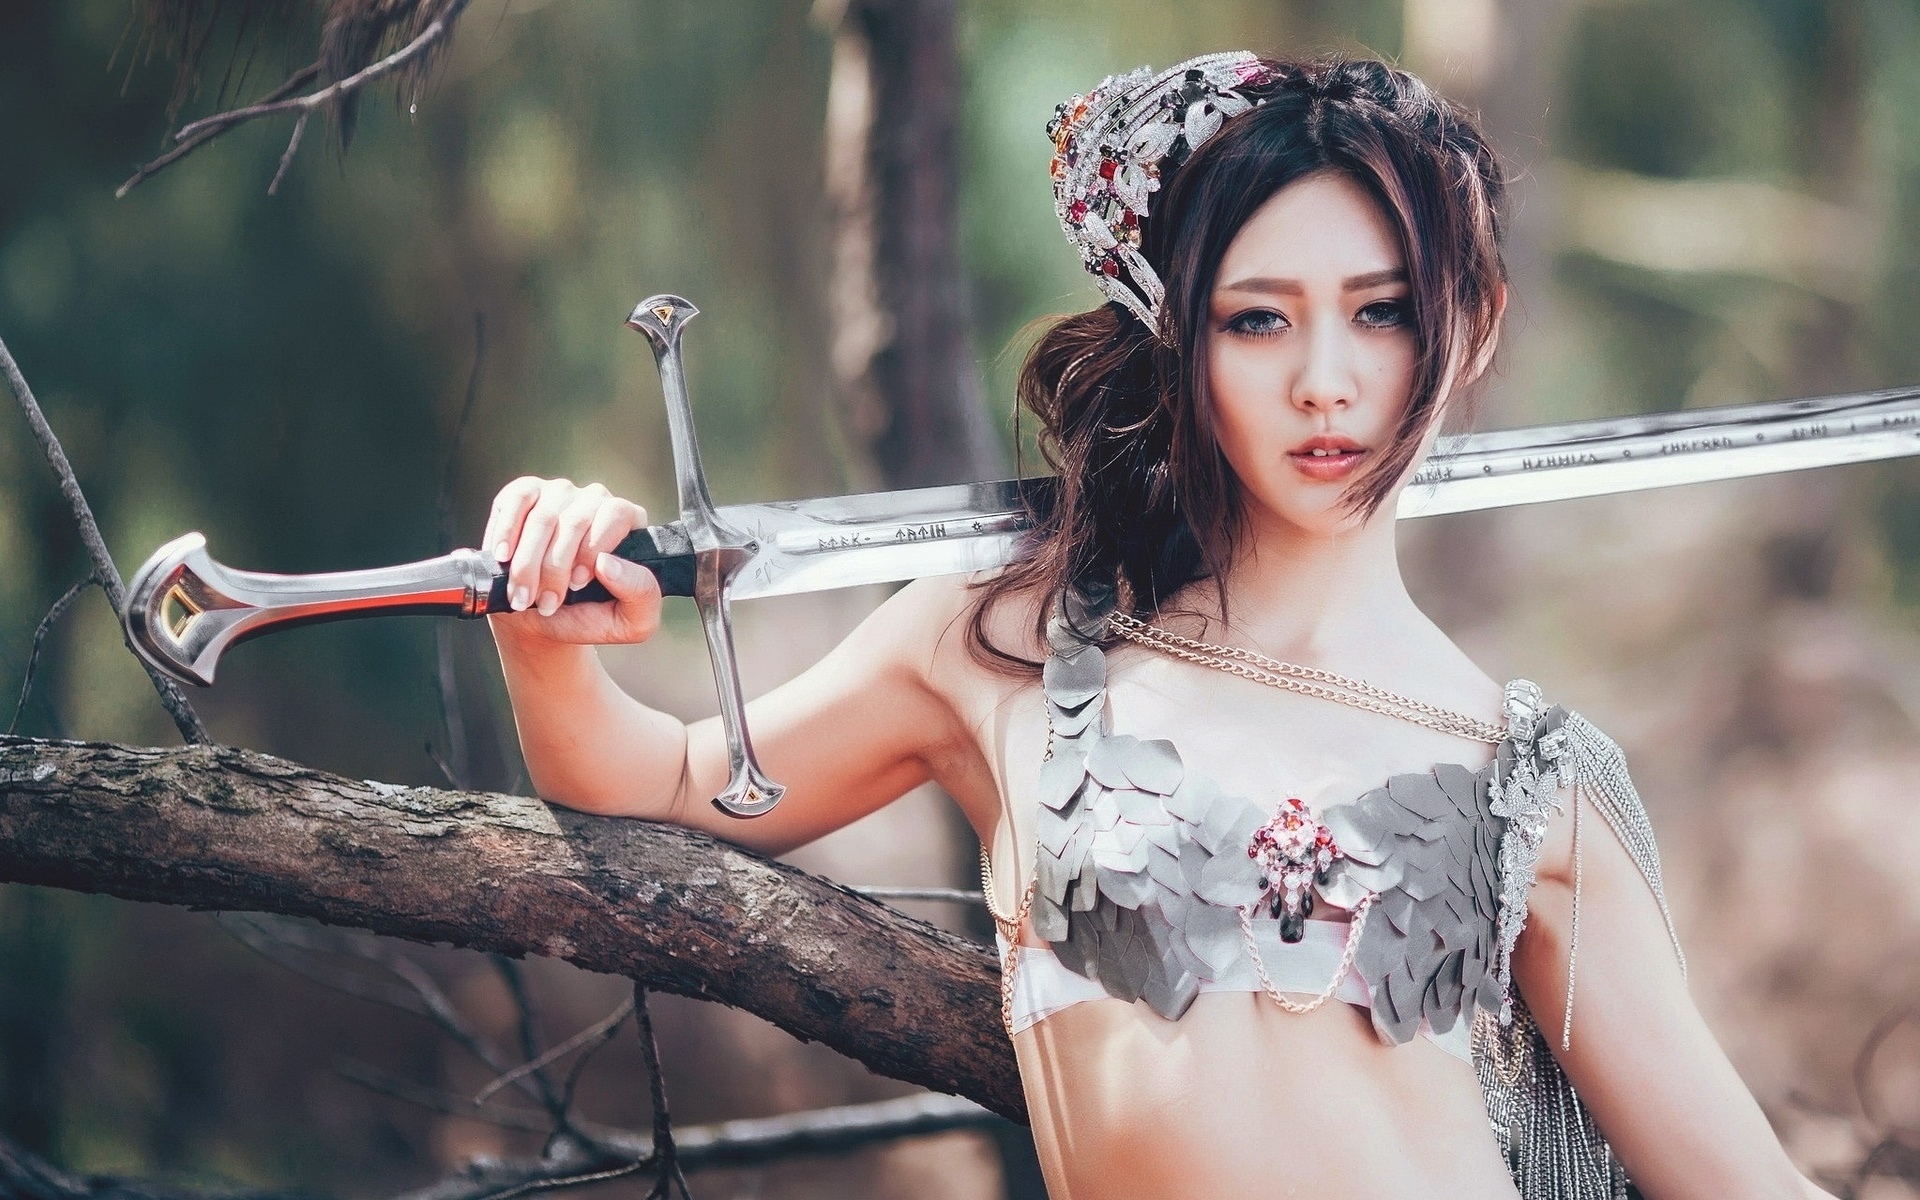 Asian fantasy girl porn